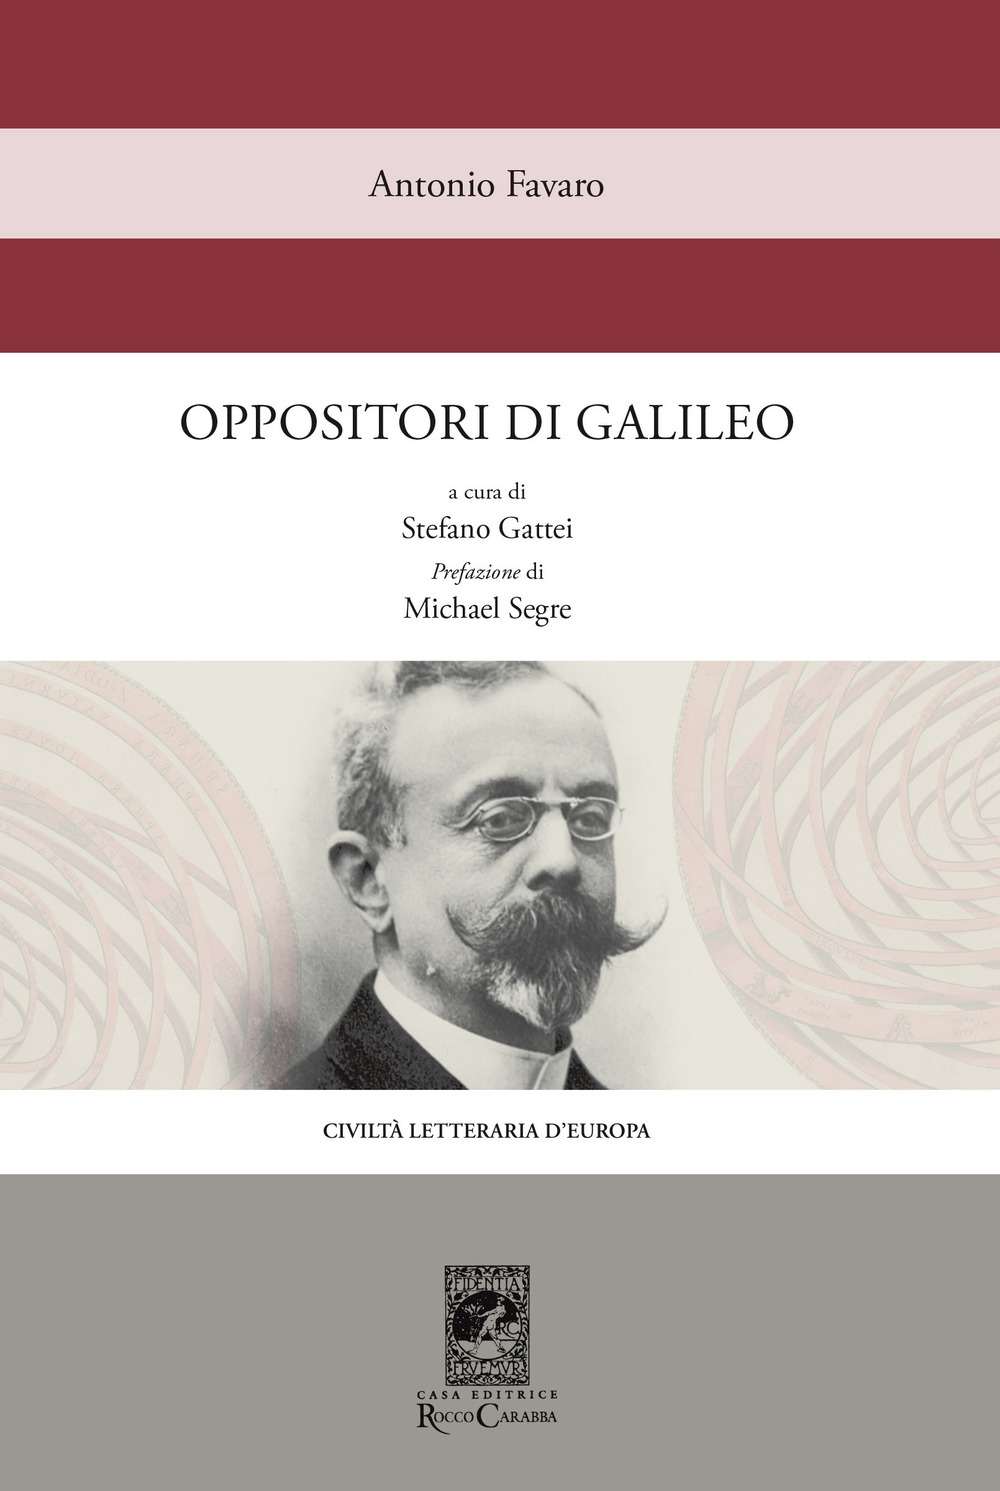 Libri Antonio Favaro - Oppositori Di Galileo NUOVO SIGILLATO, EDIZIONE DEL 15/03/2019 SUBITO DISPONIBILE